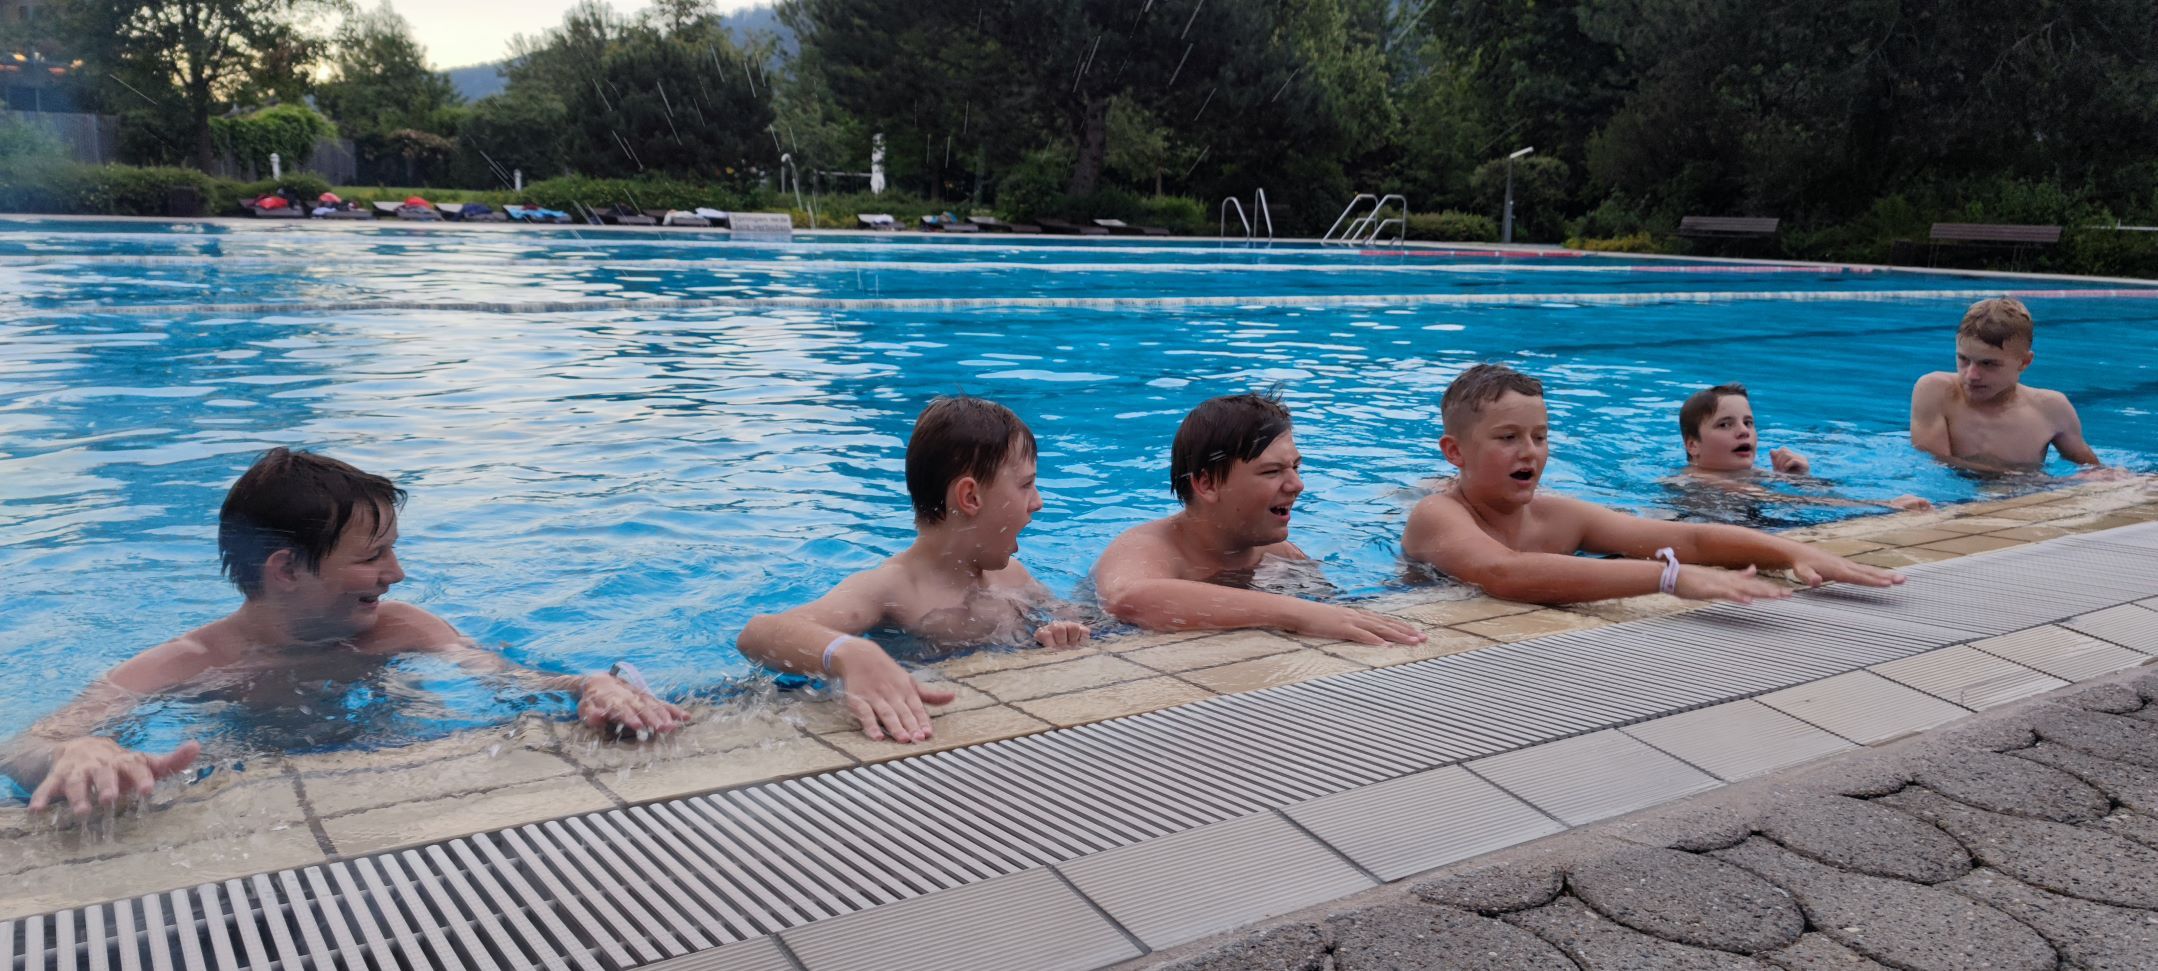 Blaulichtzeltlager Ruhpolding: Spaß im Schwimmbecken